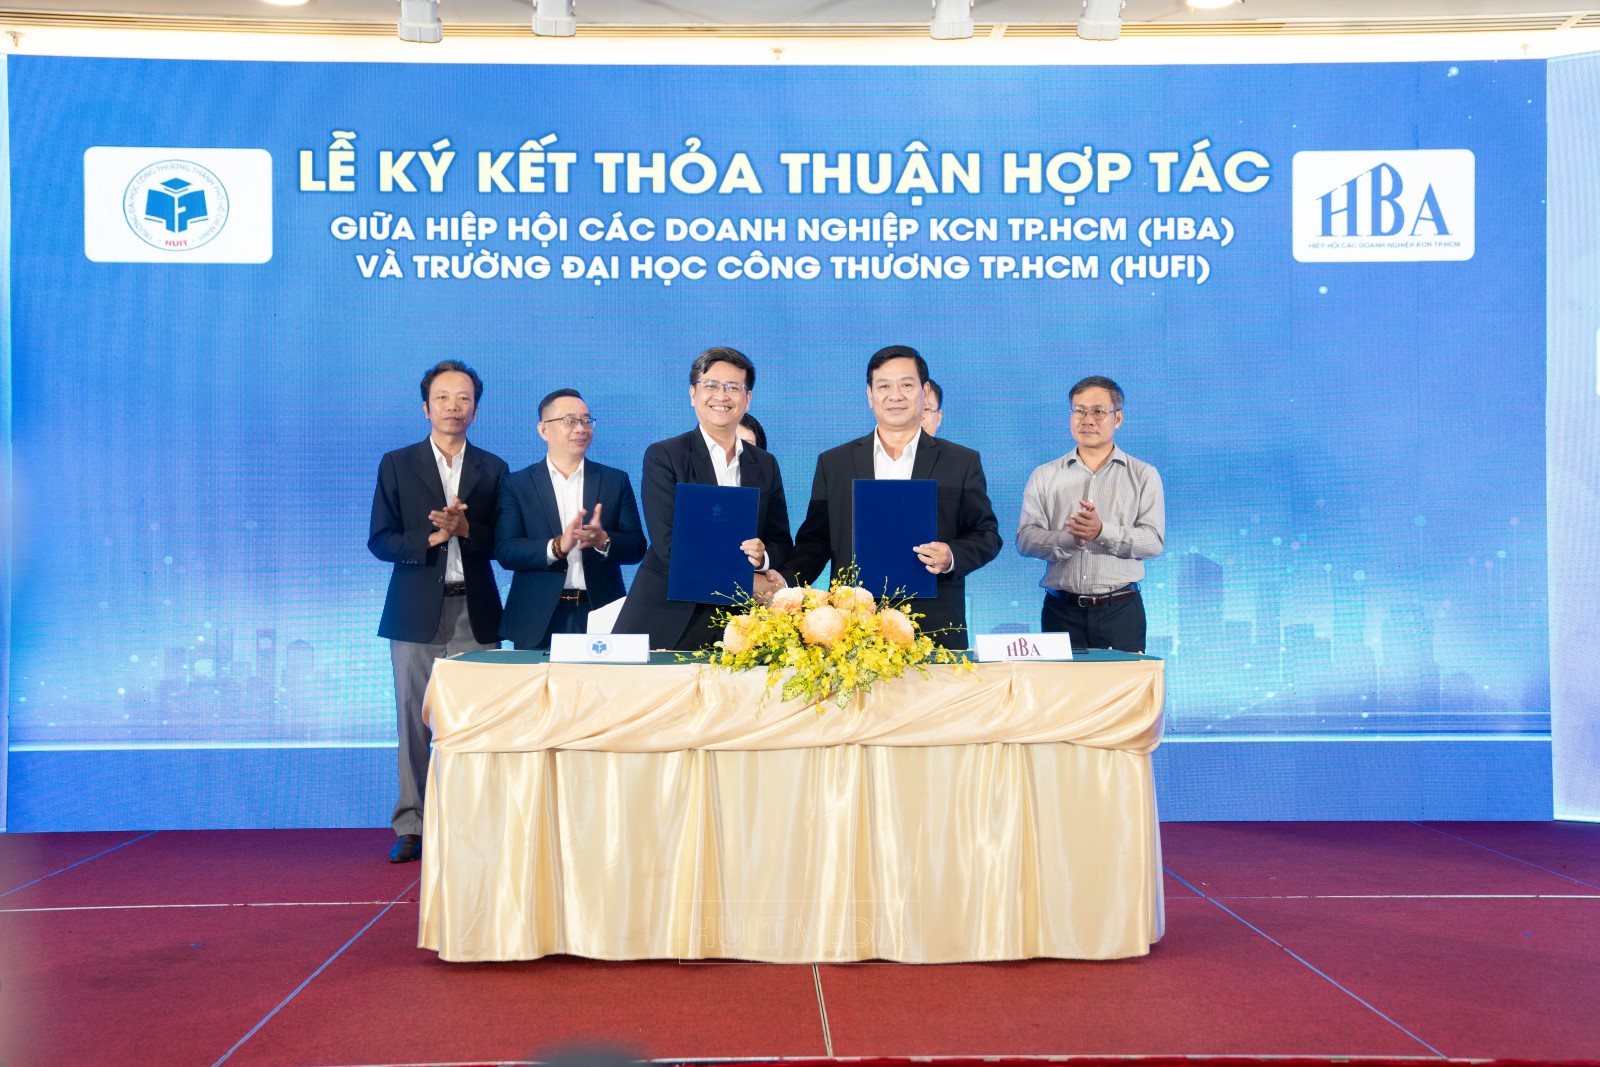 Trường Đại học Công Thương TP.HCM (HUIT) ký kết hợp tác với Hiệp hội các Doanh nghiệp KCN Tp. Hồ Chí Minh (HBA) 